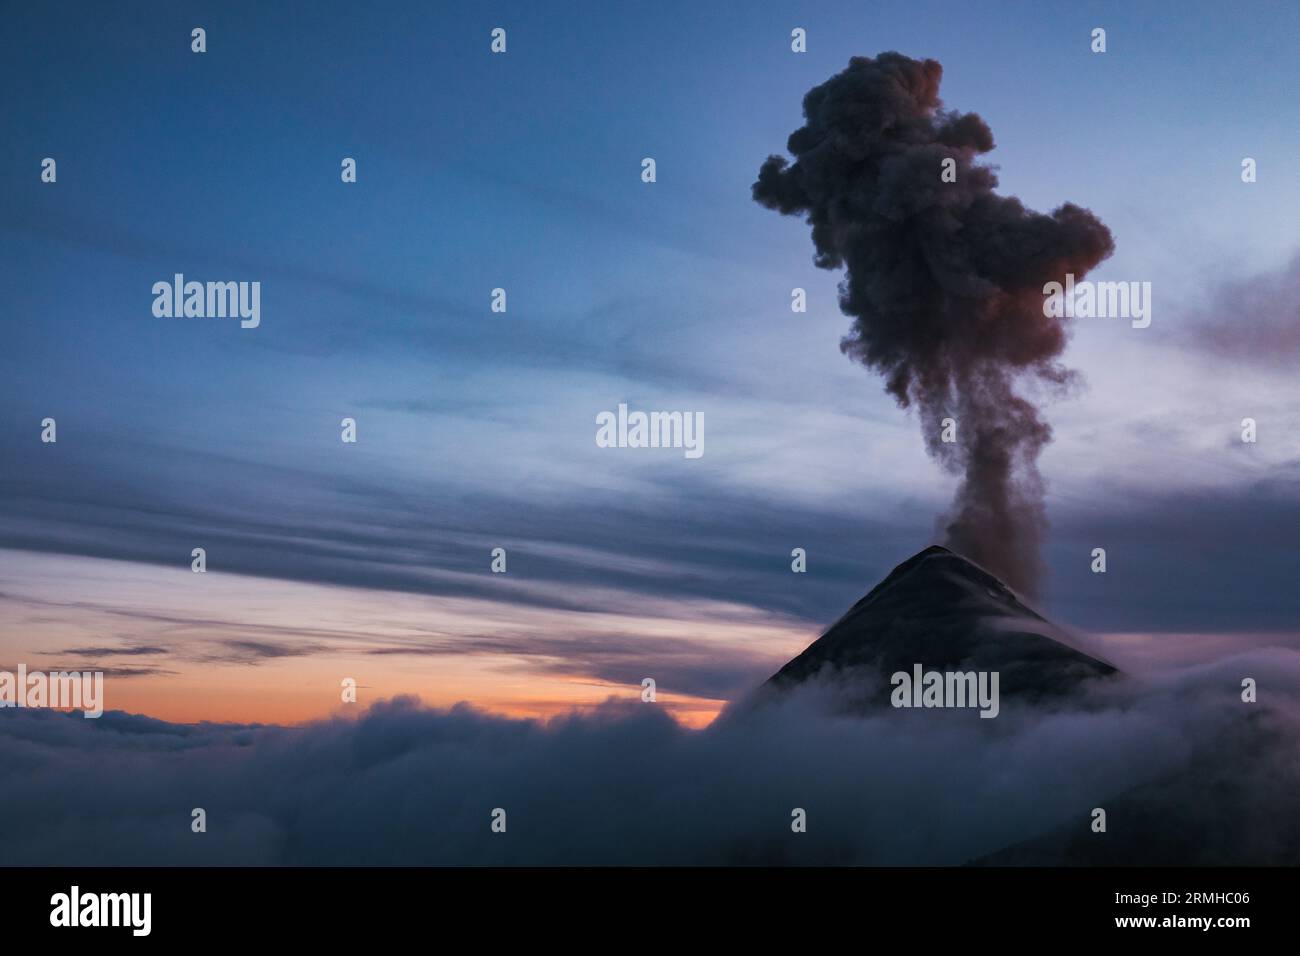 Une scène dramatique comme le volcan Fuego au Guatemala entre en éruption à travers les nuages bas du soir, envoyant un panache sombre de cendres haut dans l'air Banque D'Images